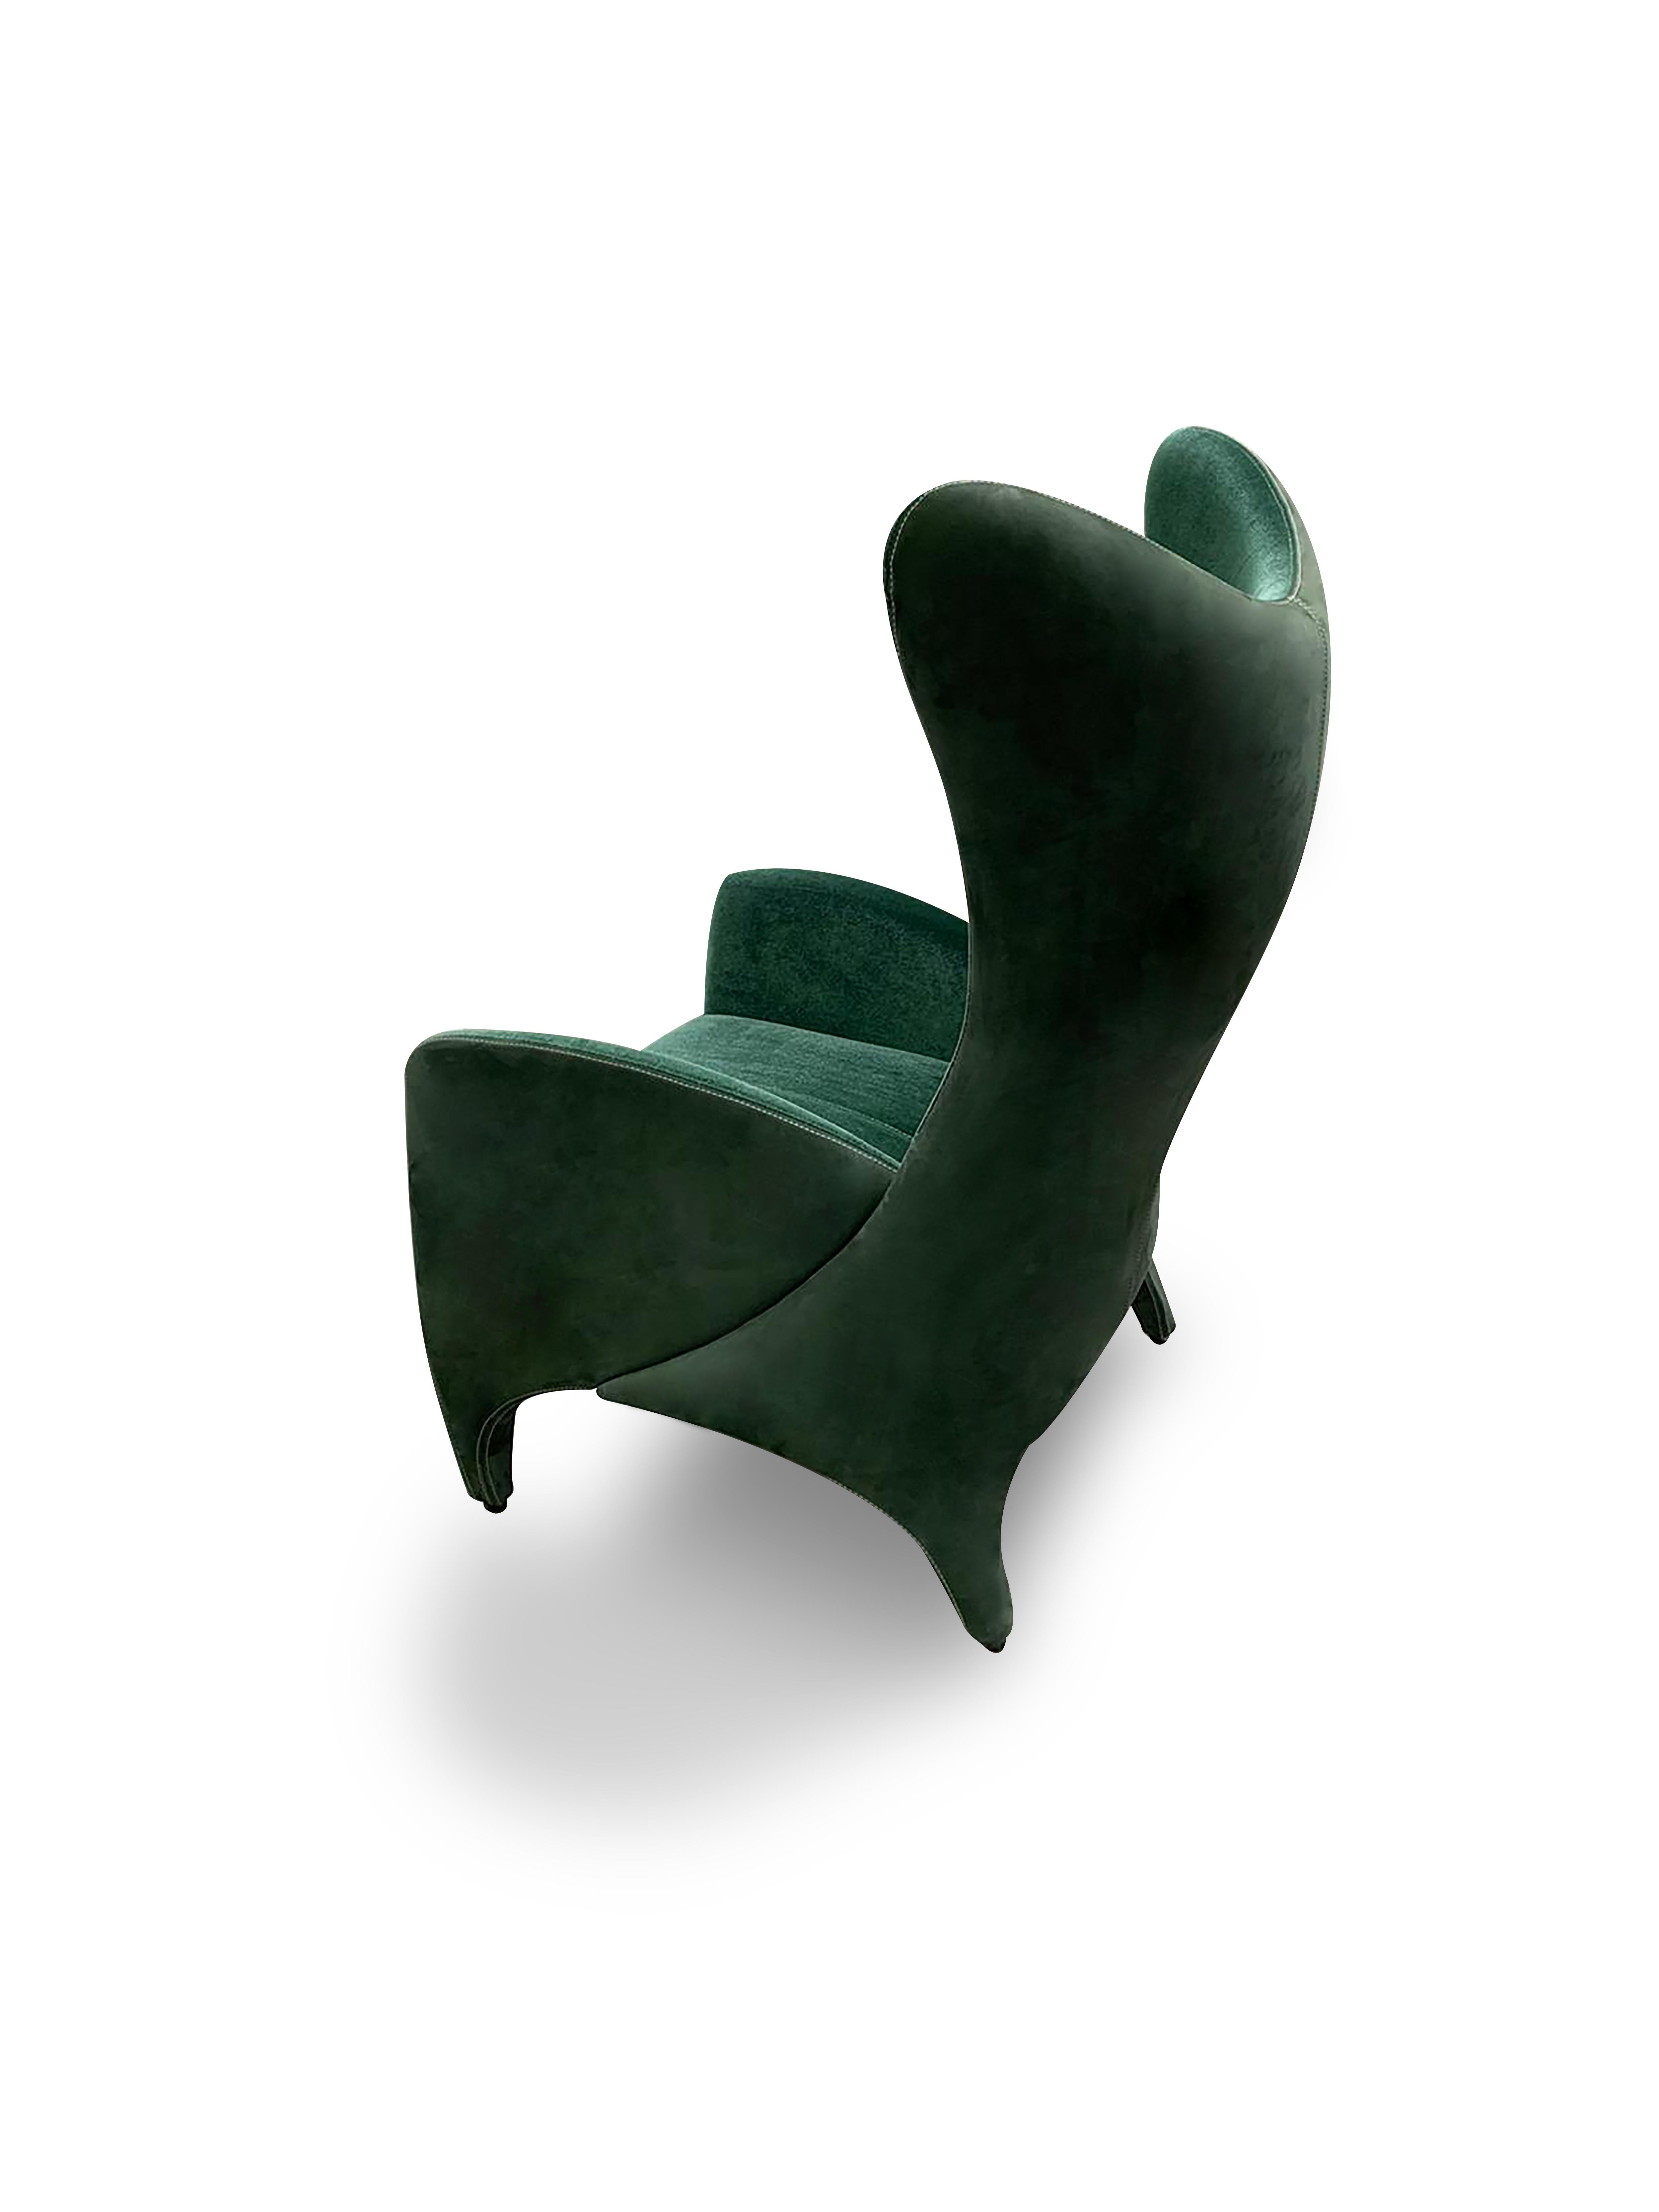 Der AVI-Sessel. Lassen Sie sich von dieser modernen Variante des klassischen Ohrensessels mit seinen weichen Kurven und seiner bequemen Polsterung umarmen. Seine dynamisch geformte Silhouette wird durch zwei sich überlagernde organische Schalen